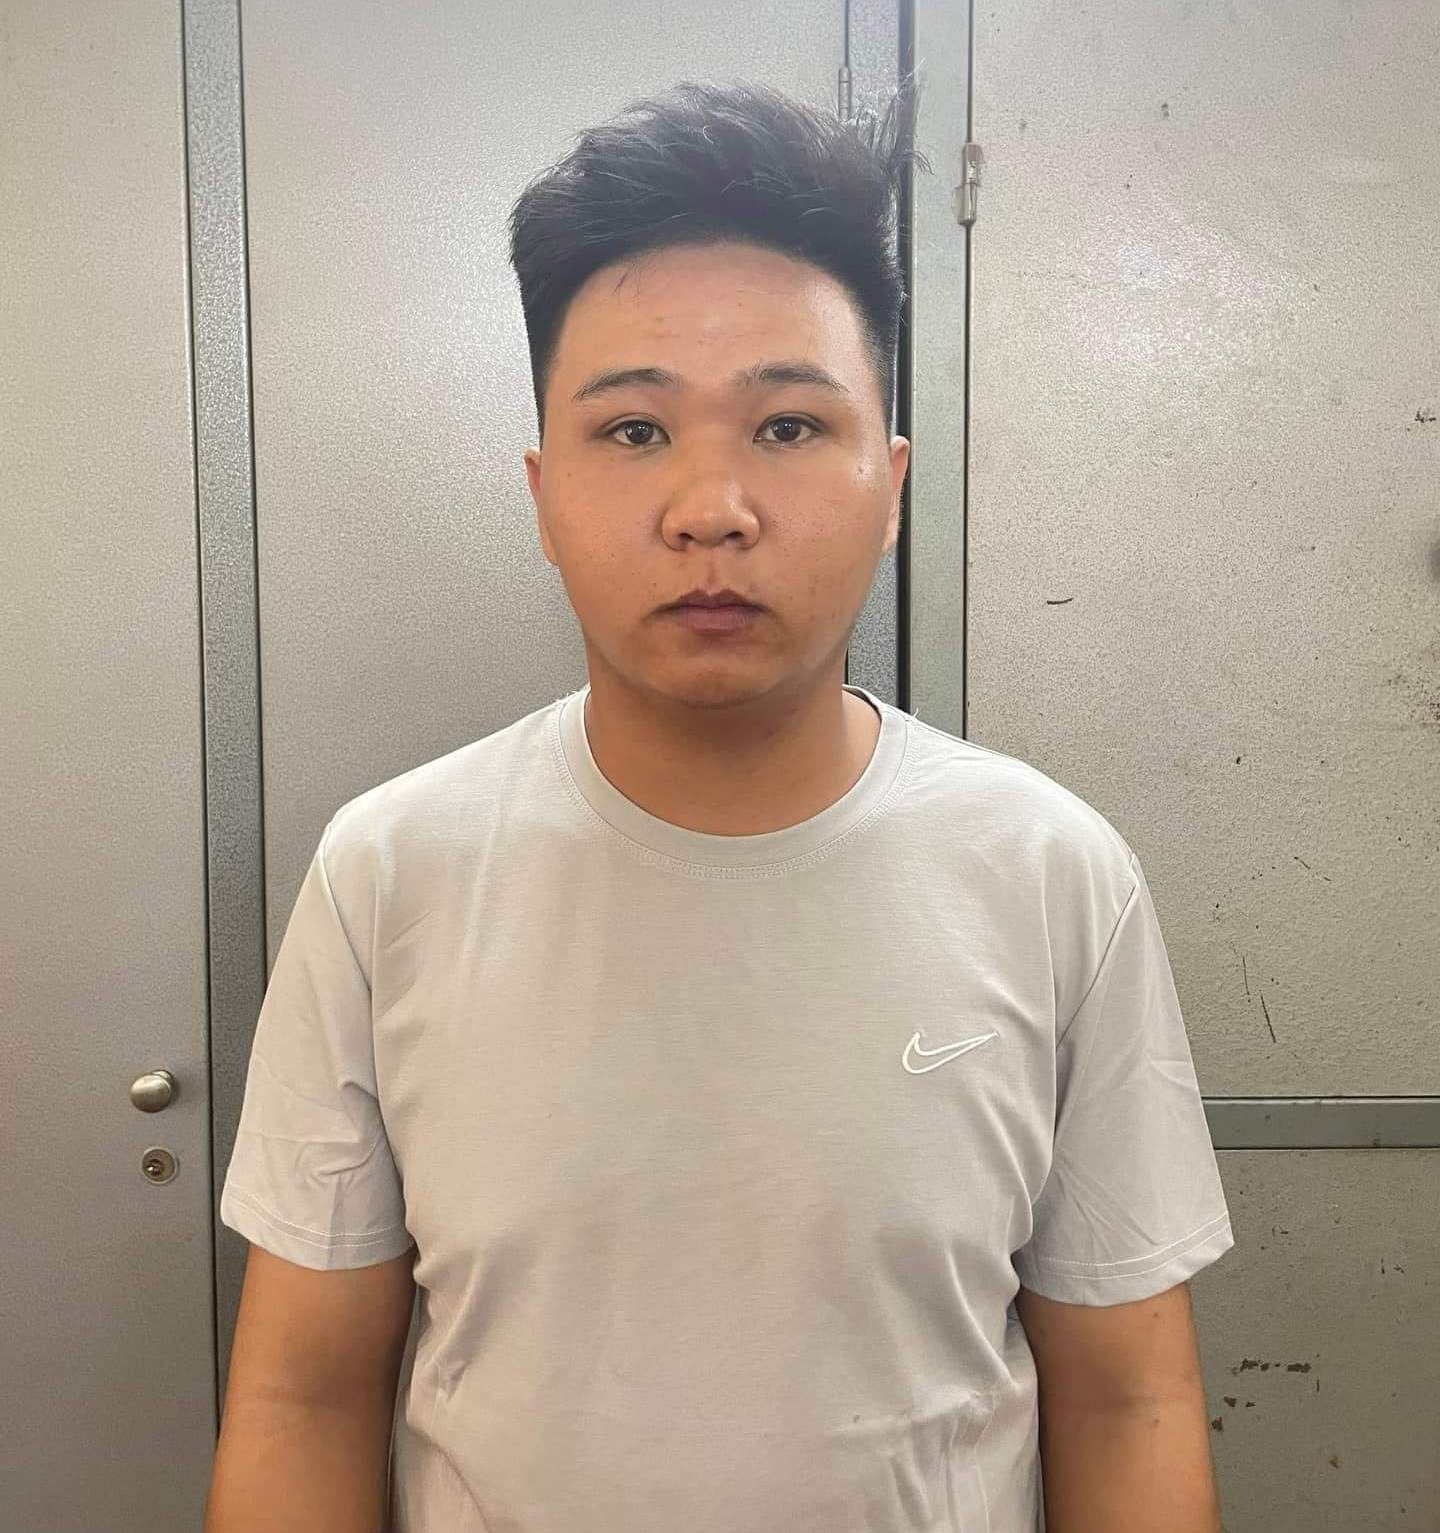 Diễn biến mới nhất vụ án mạng kinh hoàng tại quán cắt tóc gội đầu ở Bắc  Ninh